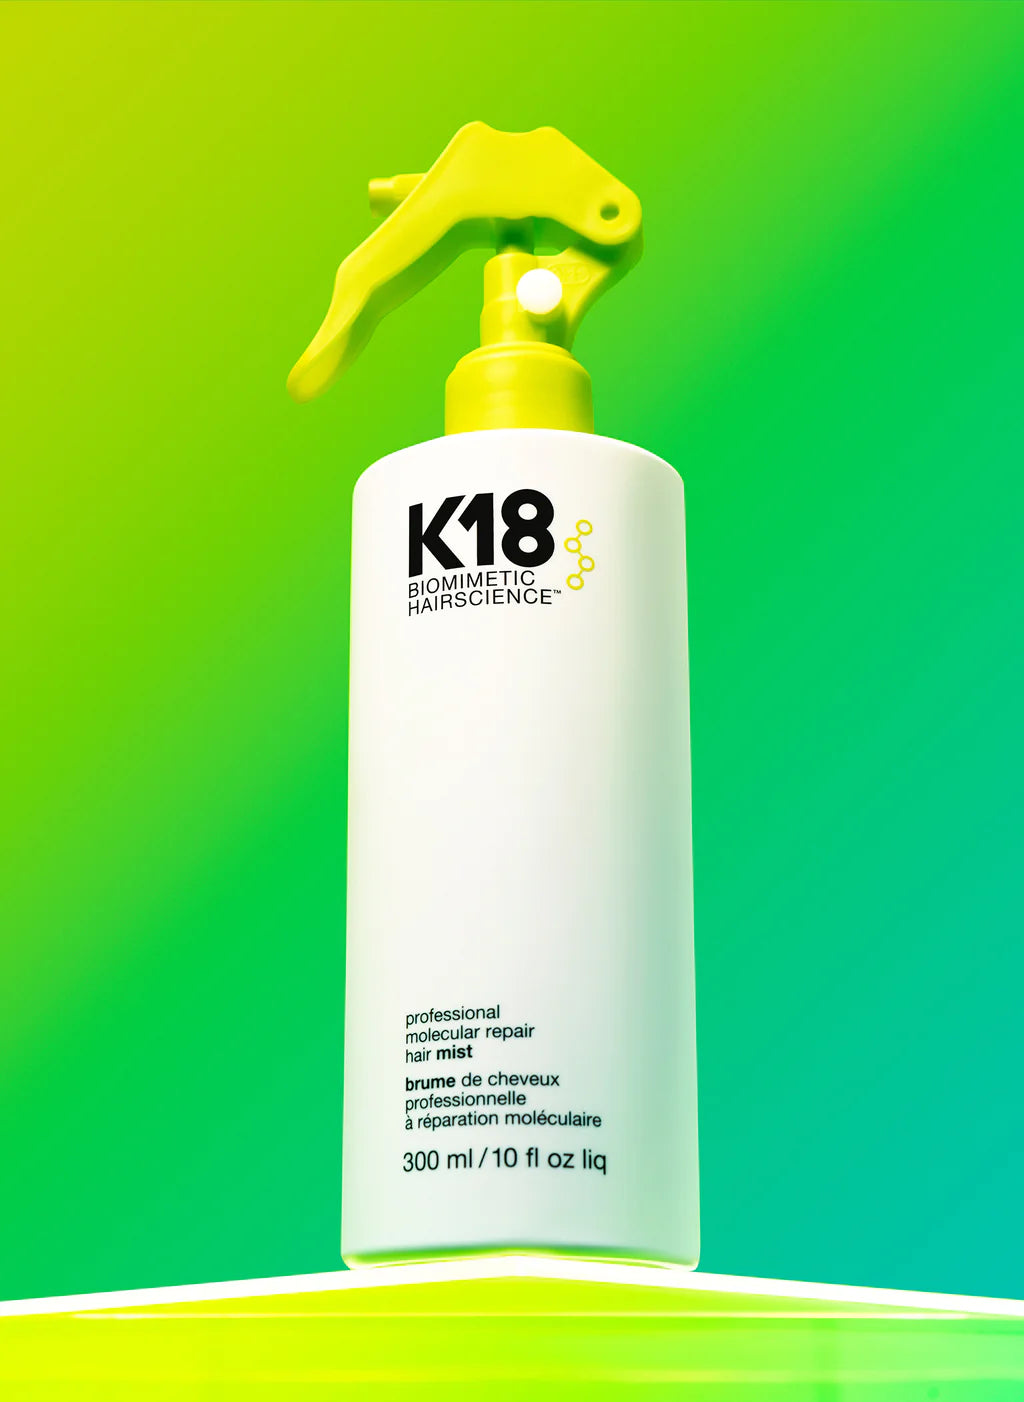 K18 Professional Molecular Repair Hair Mist 300 ml